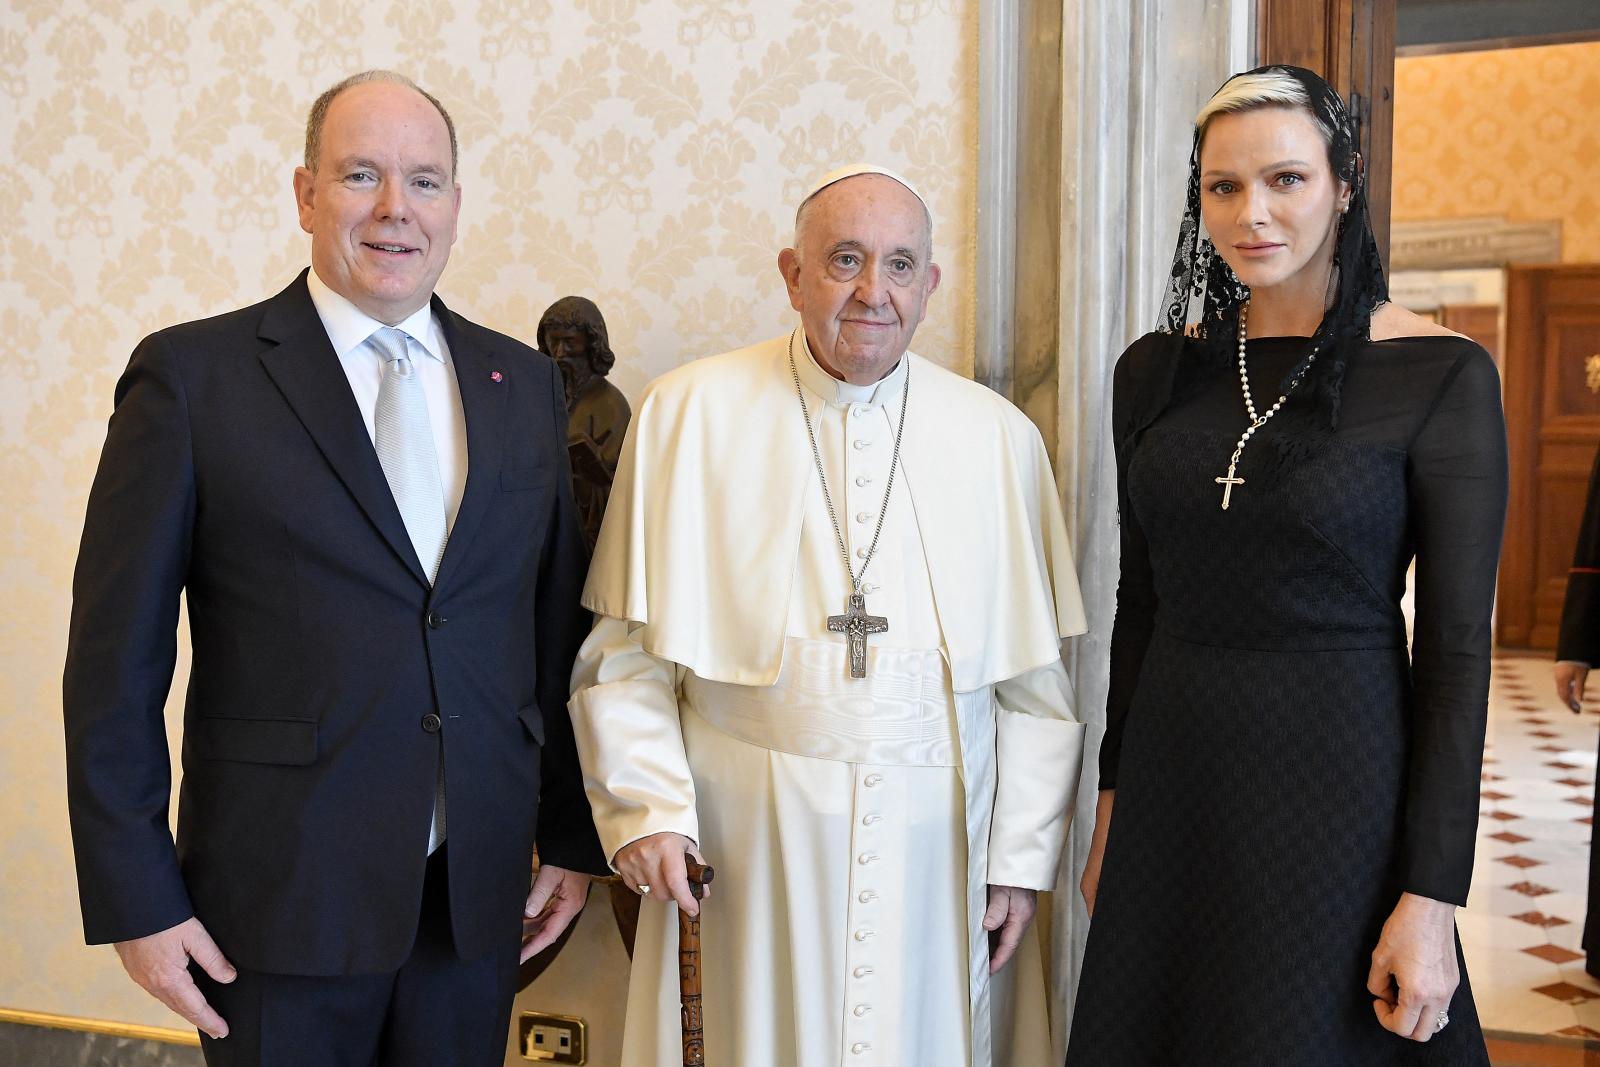 Кого или что оплакивает? Принцесса Монако пришла к Папе Римскому во «вдовьем» наряде - image 1